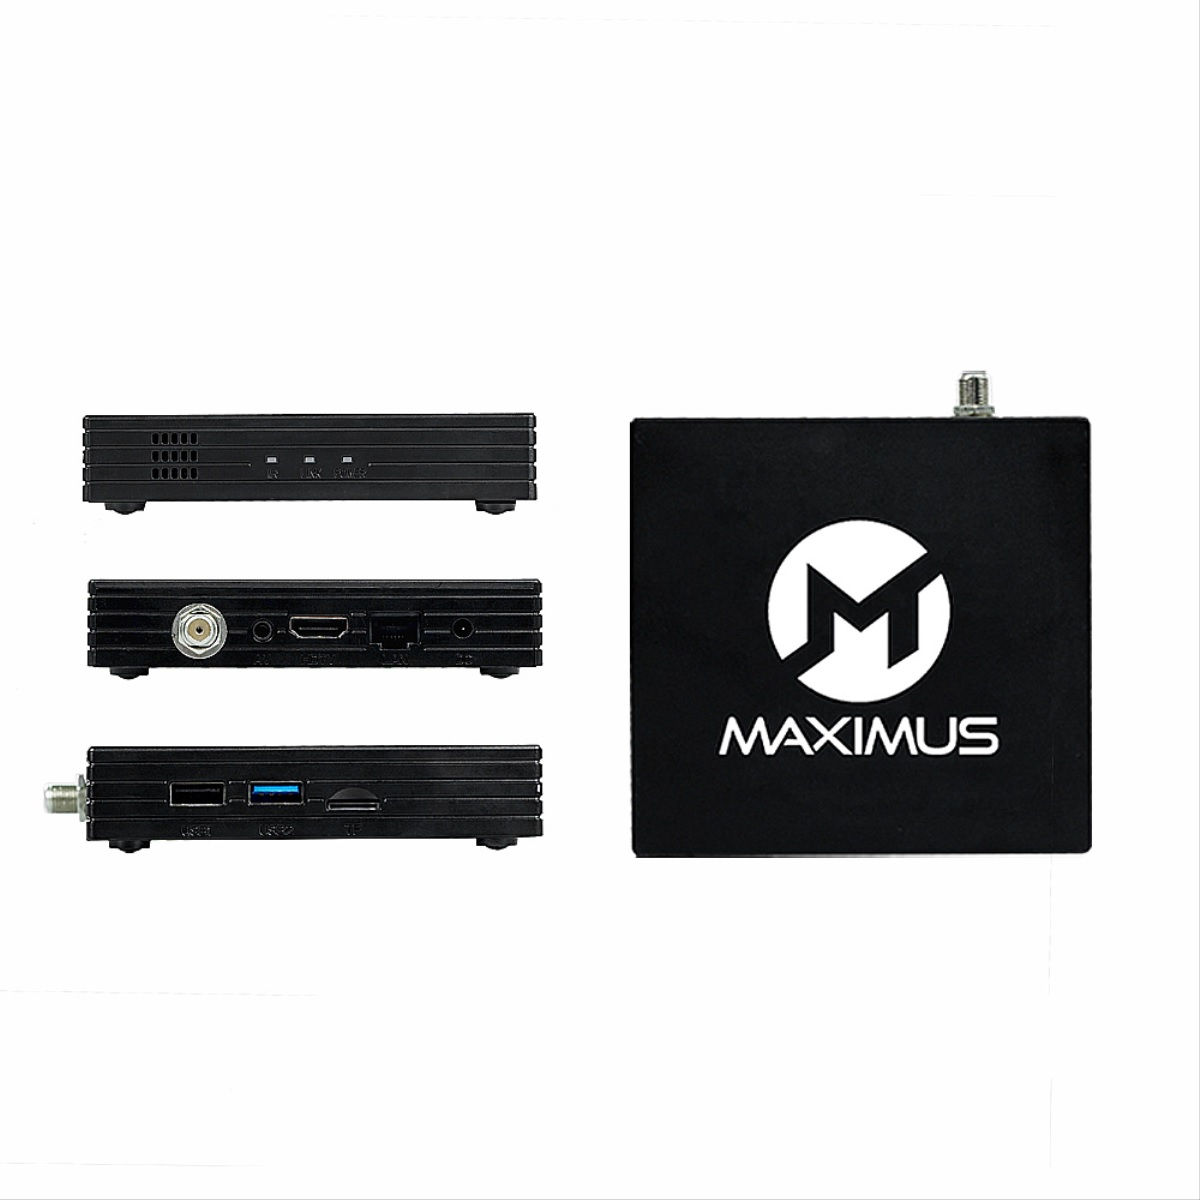 MAXIMUS 5.0 (PVR-Funktion, Box Receiver Fernbedienung HDMI Wlan Sat-Receiver TV mit HD - DVB-S2, und Schwarz)